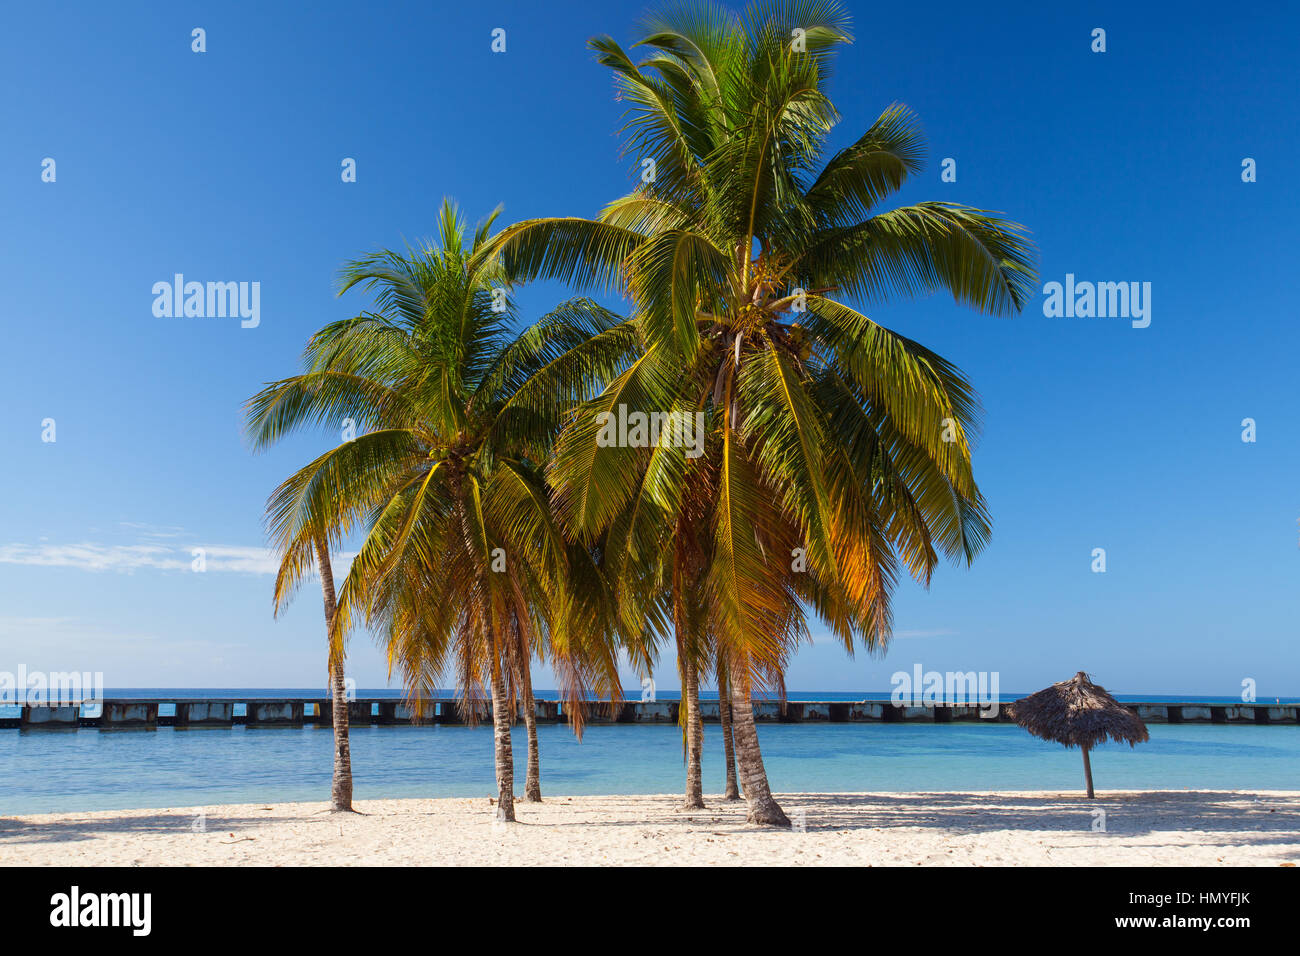 Sur la plage Playa Giron, Cuba. Cette plage est célèbre pour son rôle lors de l'invasion de la Baie des Cochons. Banque D'Images